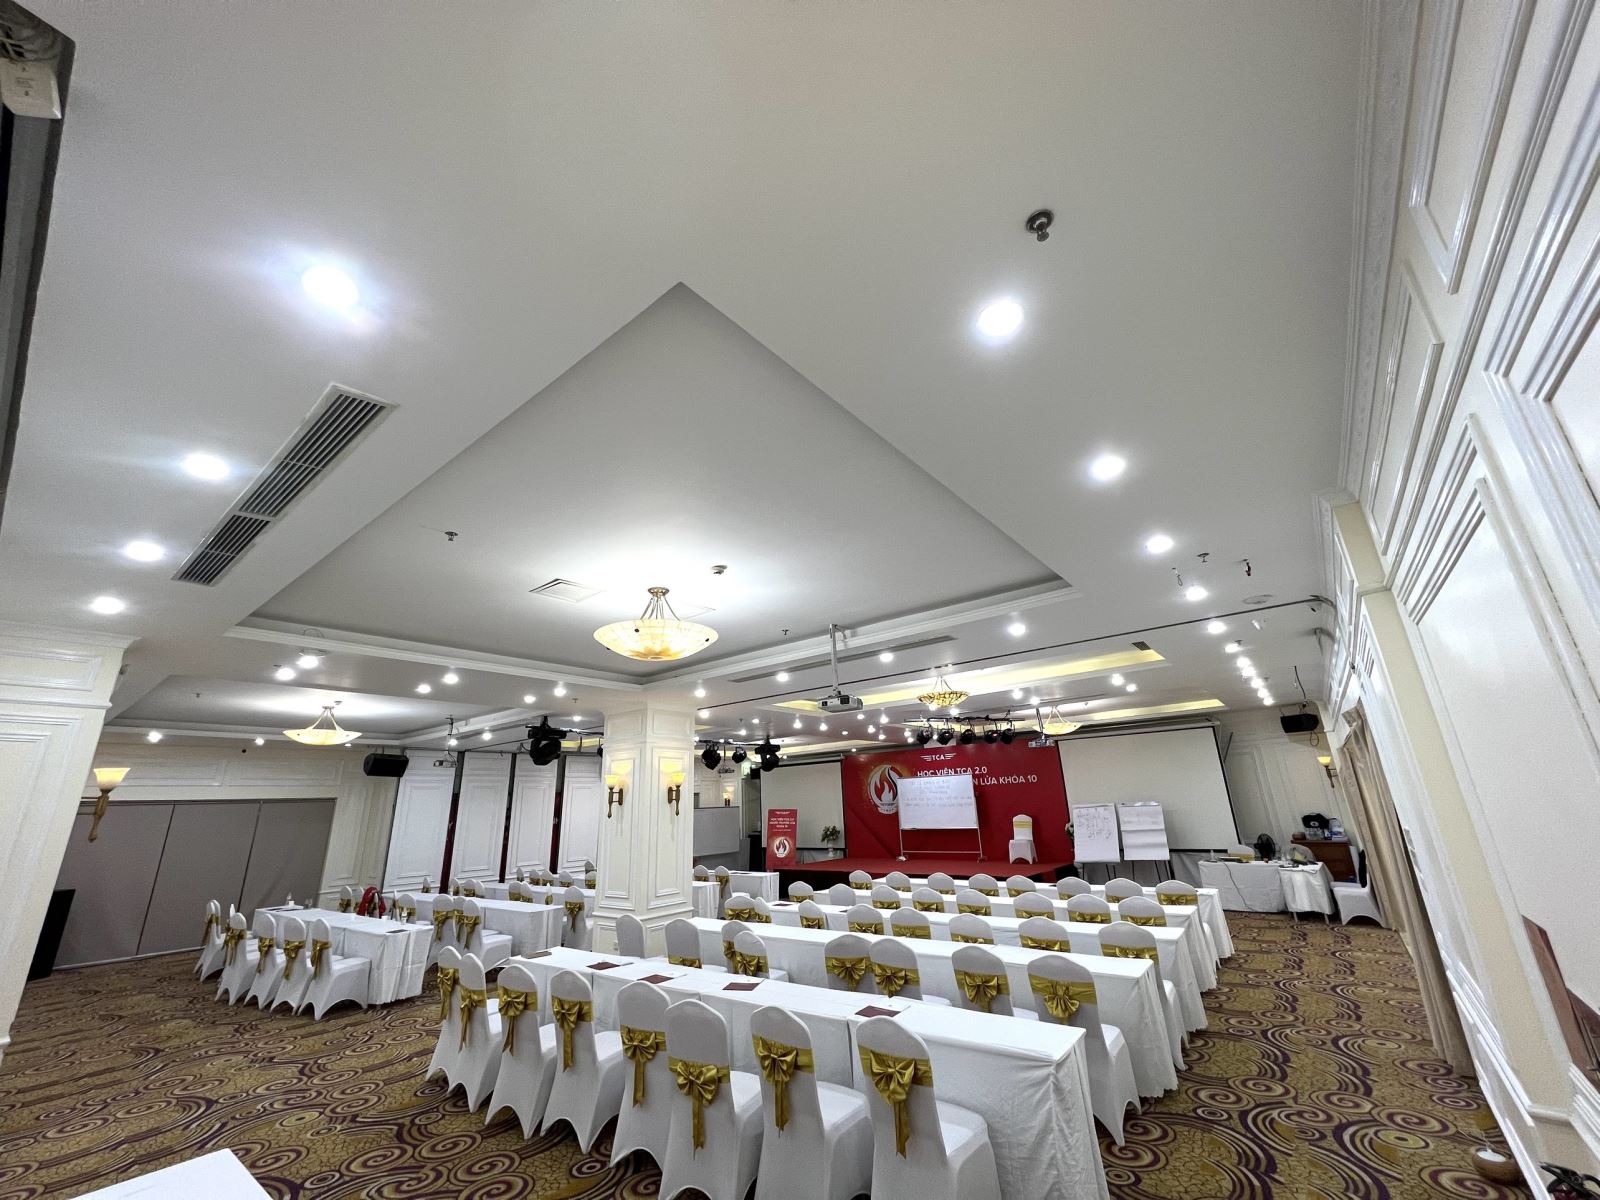 Tổ chức Hội nghị, Hội thảo tại A25 Luxury Hotel - 684 Minh Khai, Q. Hai Bà Trưng, Hà Nội